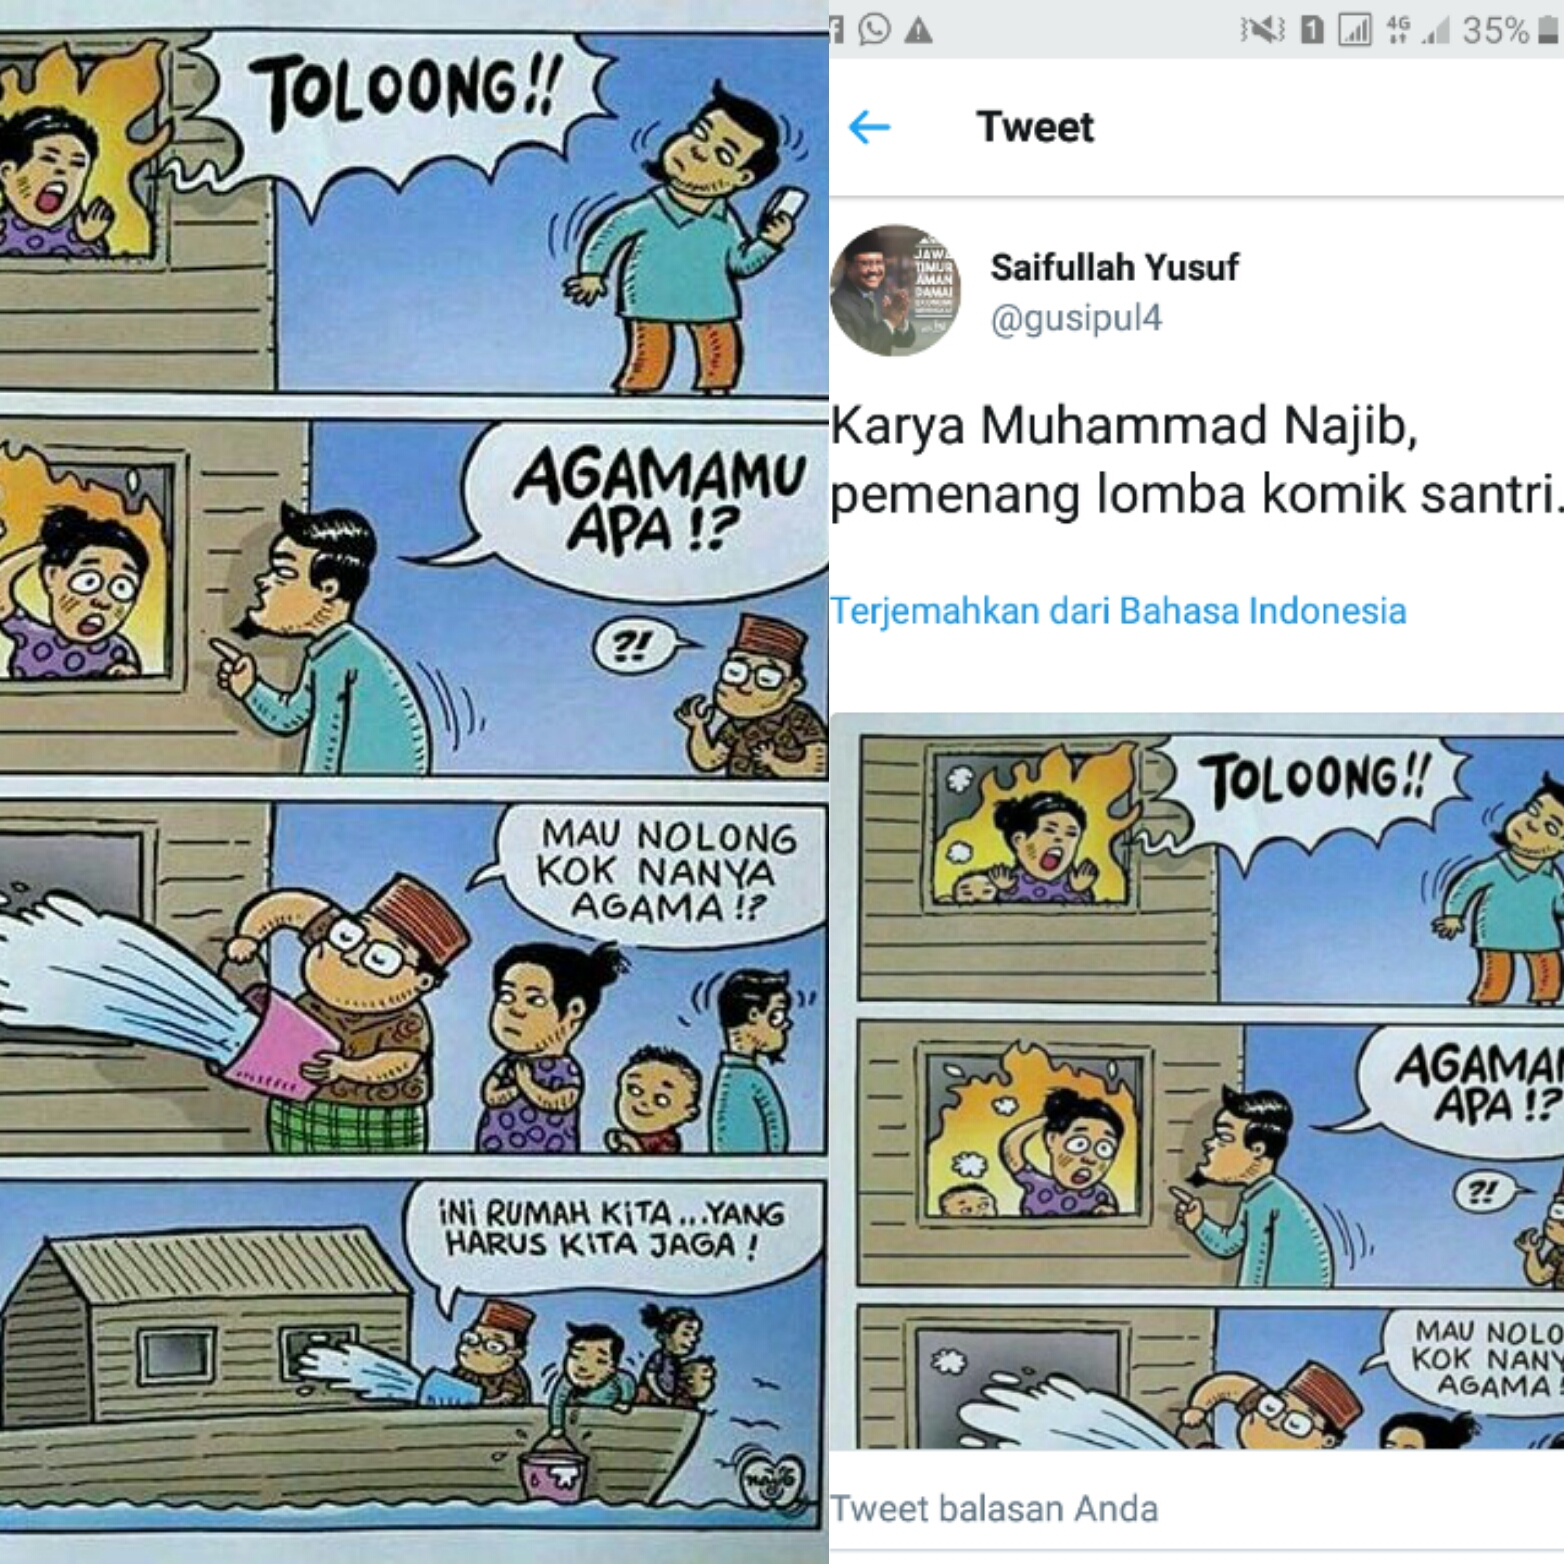 Komik Menyerang Islam Dan Bantahan Ketua RT Wajada